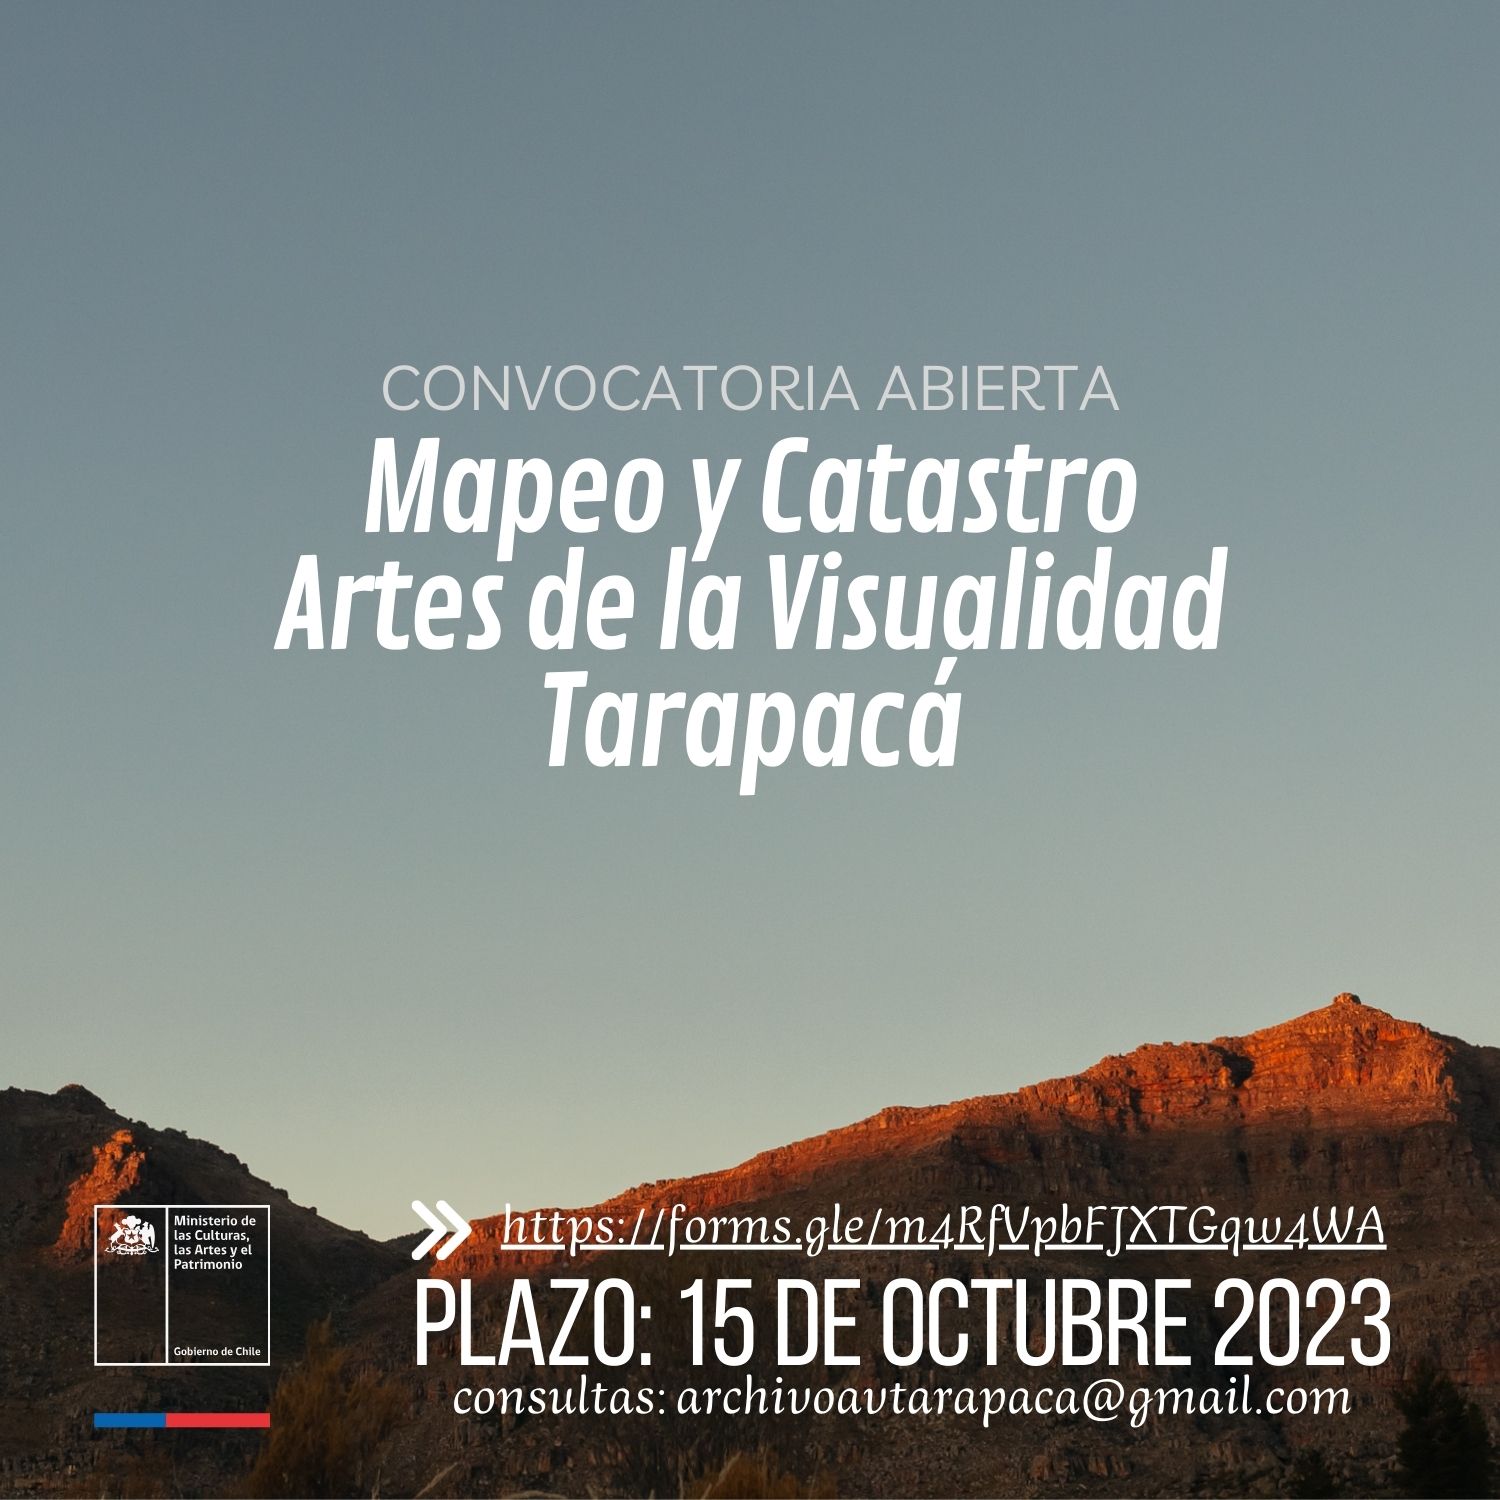 Convocatoria Abierta - Mapeo y Catastro Artes de la Visualidad de Tarapacá 2023